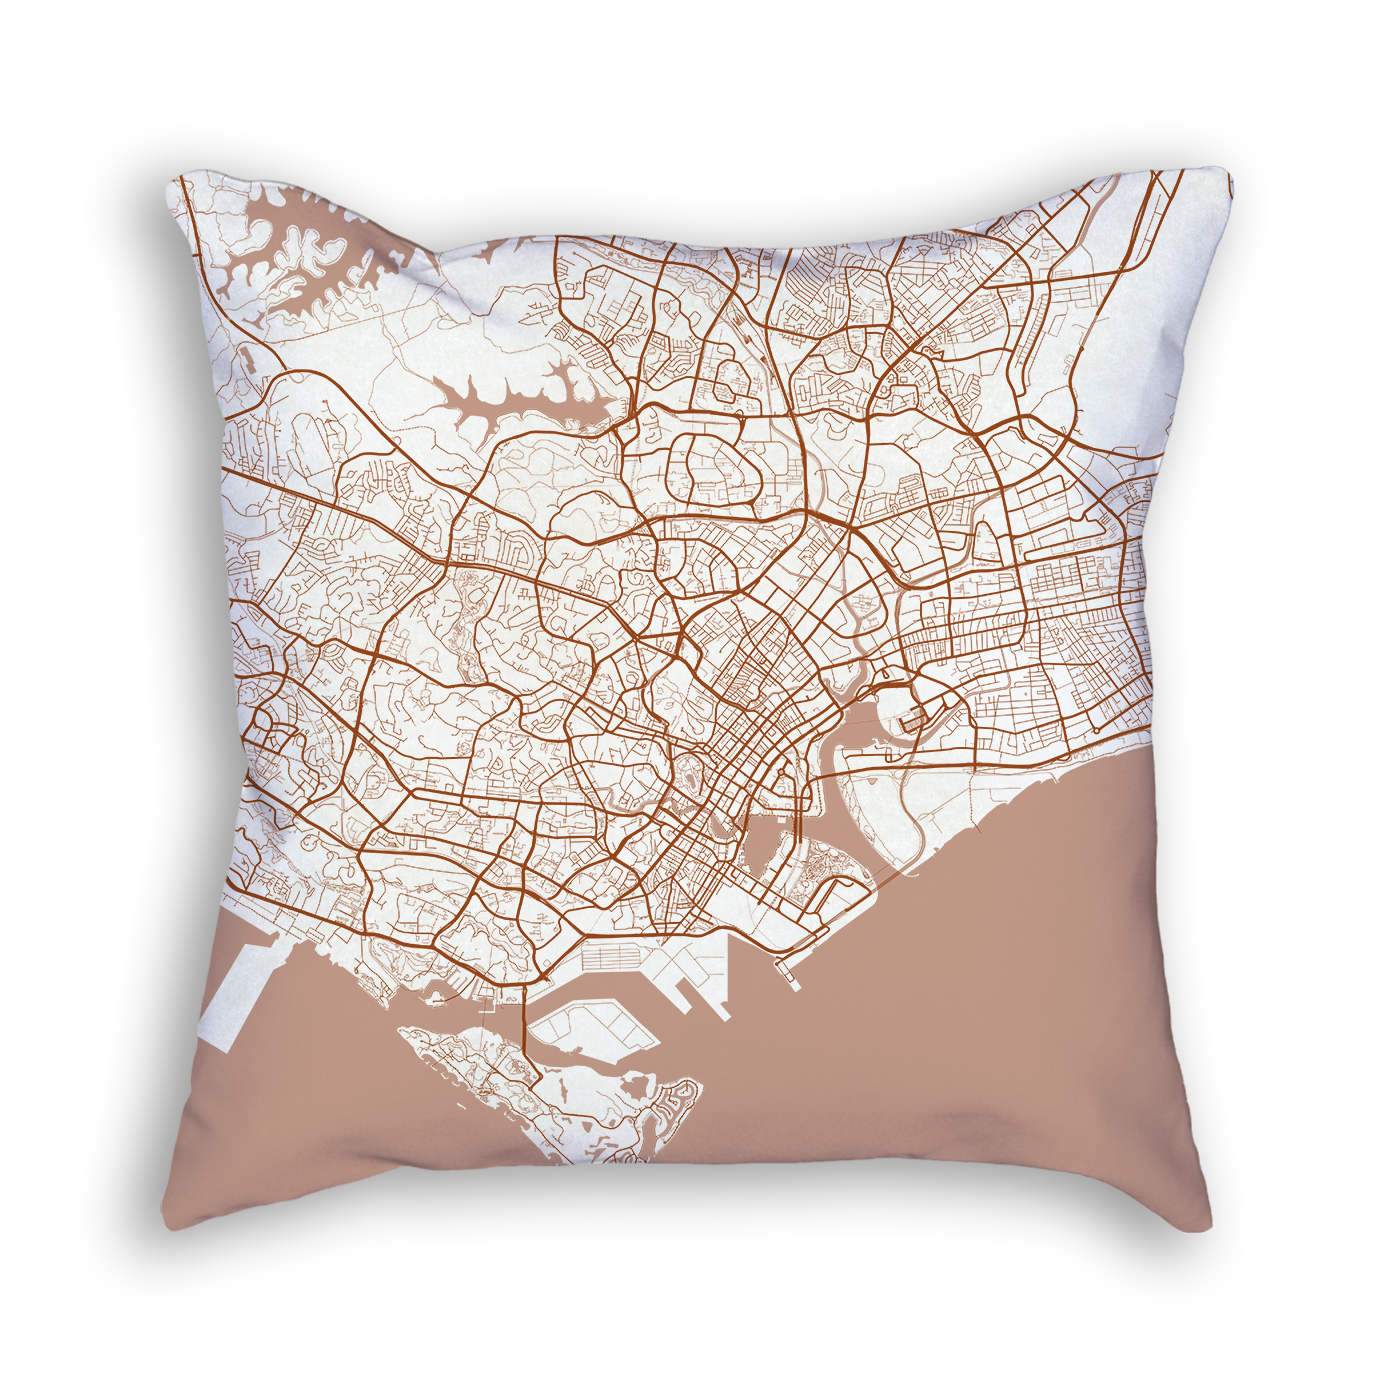 Singapore City Map Art Decorative Throw Pillow